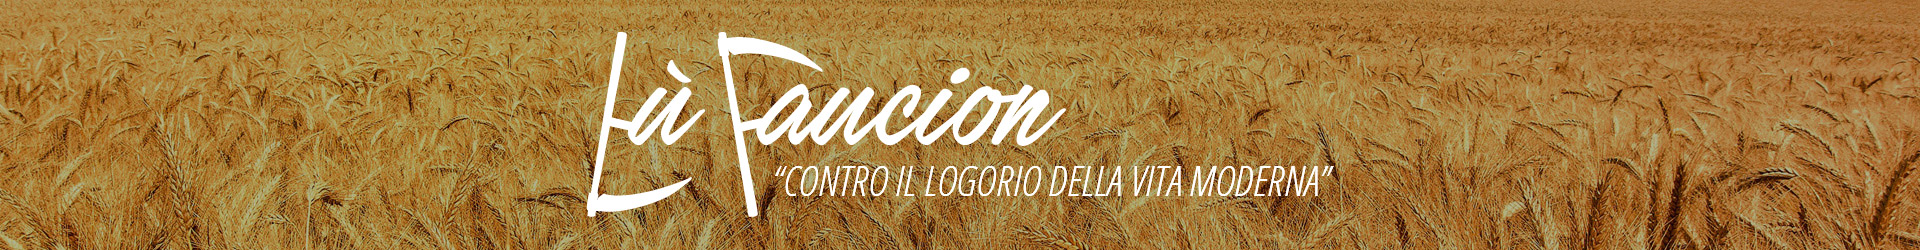 sfondo-blog-lufaucion2